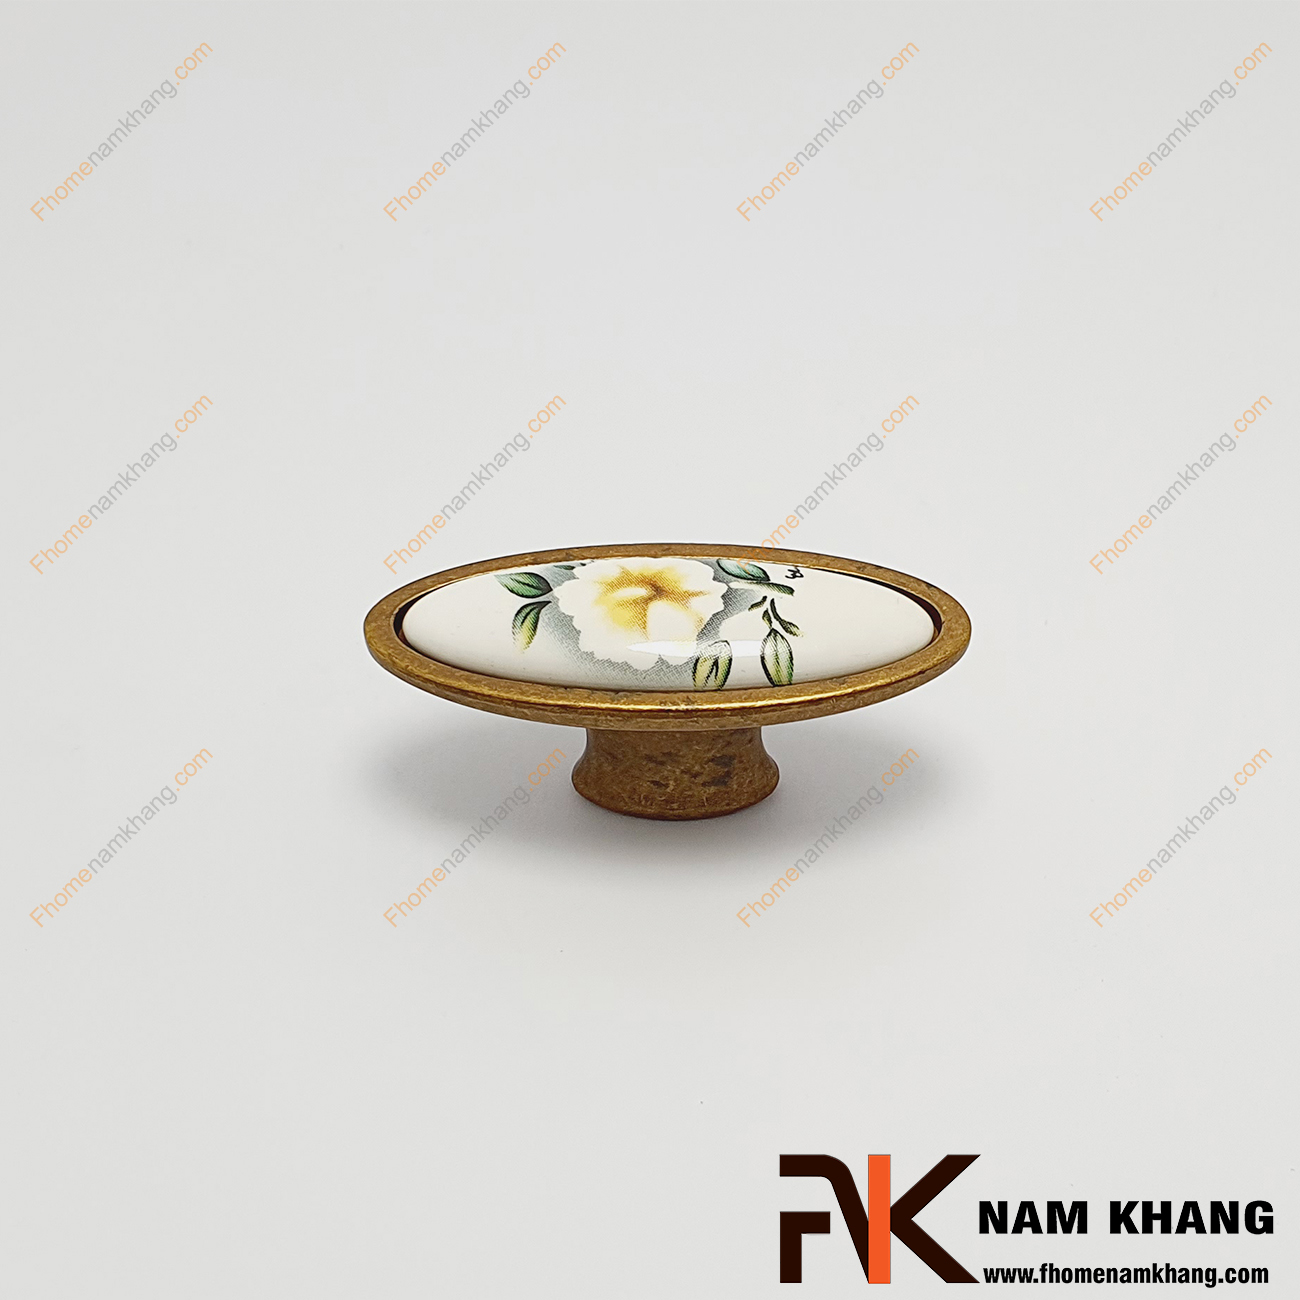 Núm cửa tủ ovan họa tiết hoa trà trắng NK019-HC được thiết kế với khuôn dạng tròn, bên trên là viên sứ trắng hoa trà được bao bọc từ hợp kim màu cafe rất đậm chất cổ điển